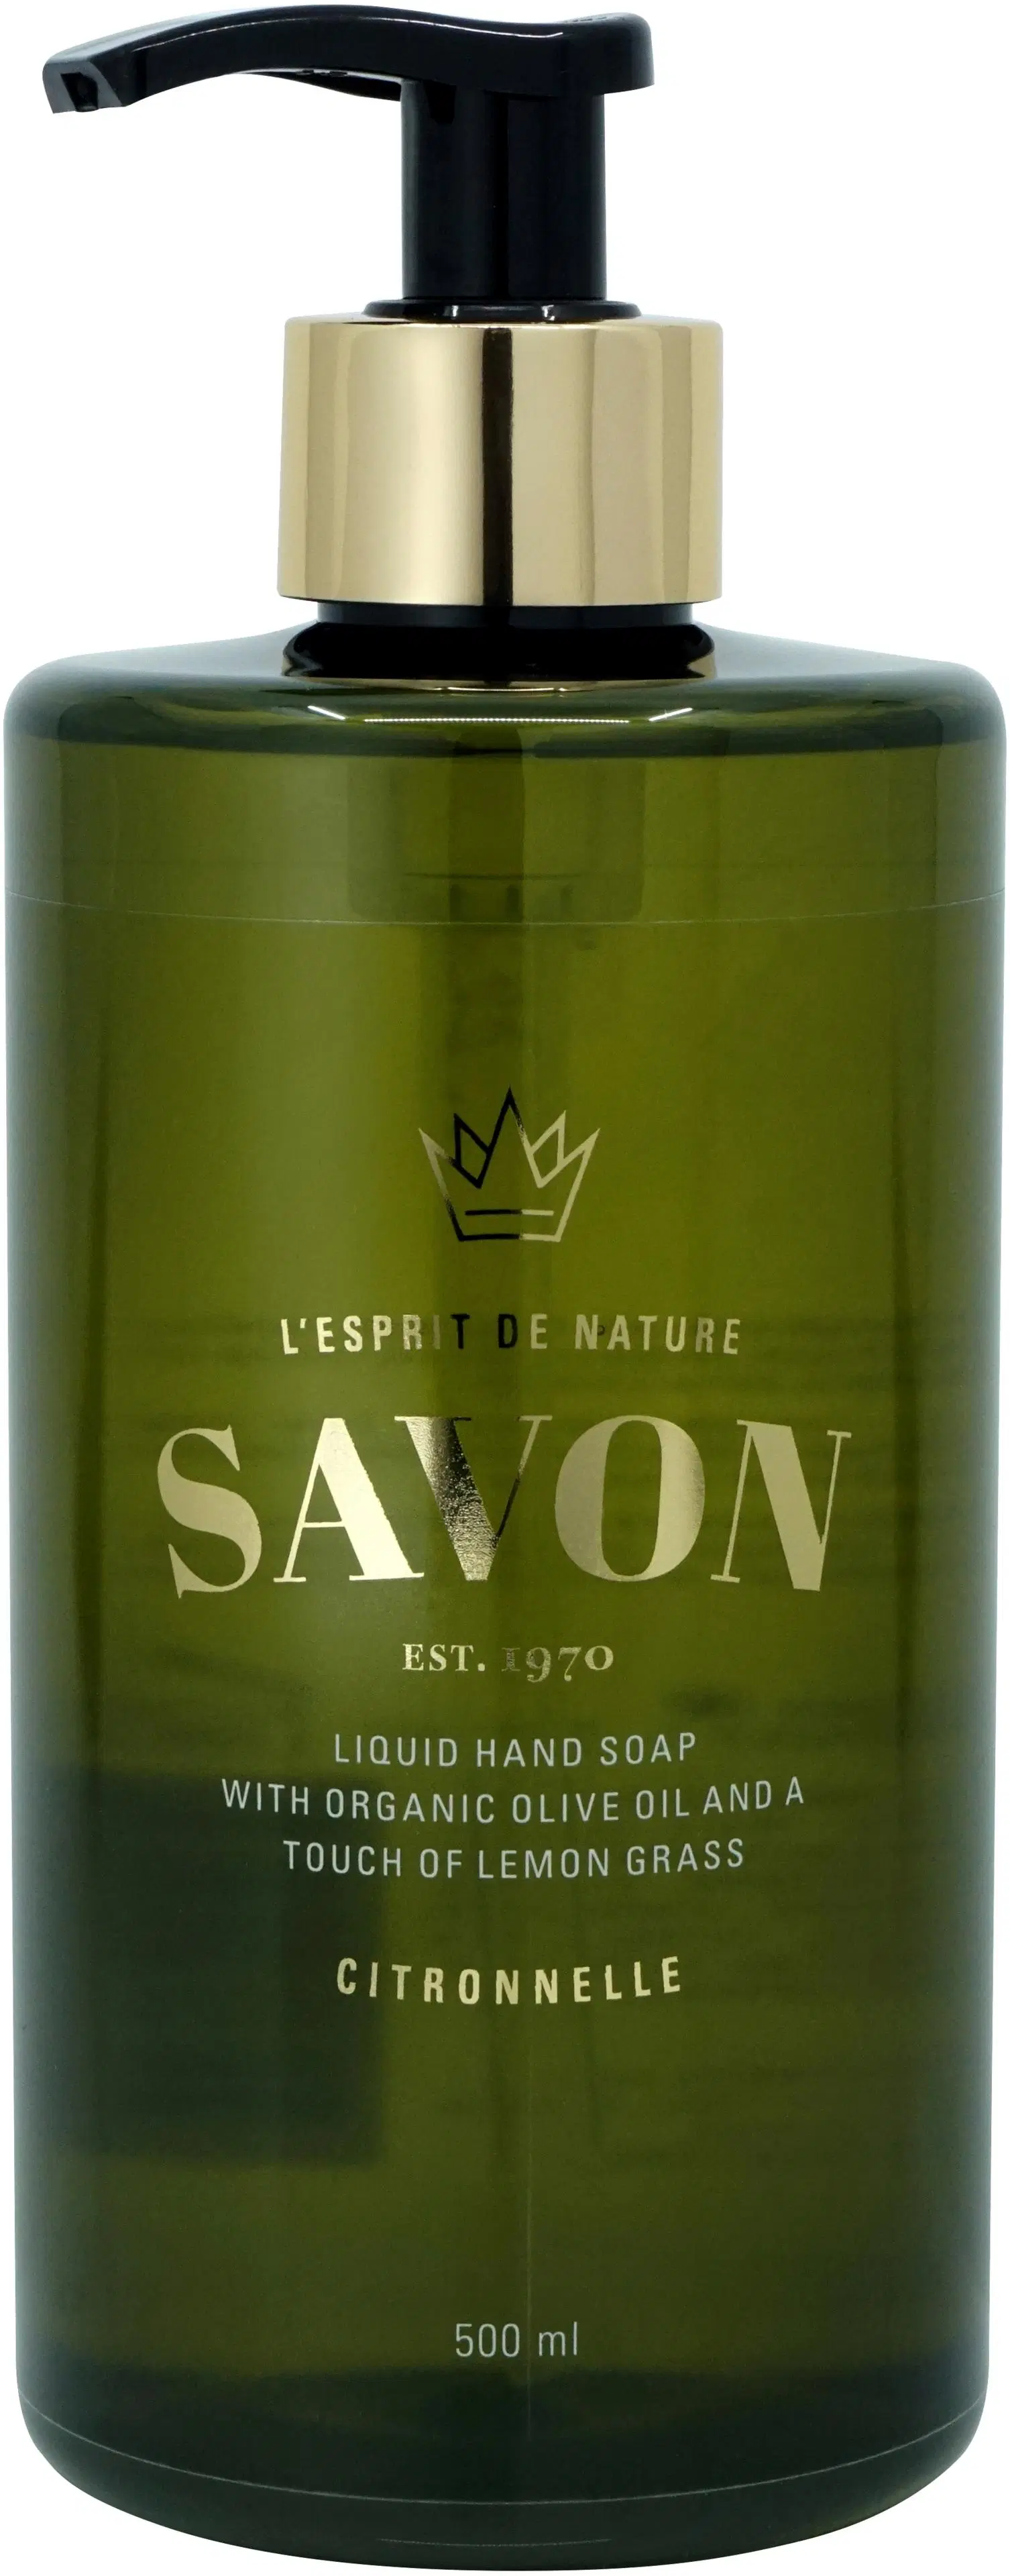 L'Esprit de Nature Savon Hand Soap Citronnelle käsisaippua 500 ml